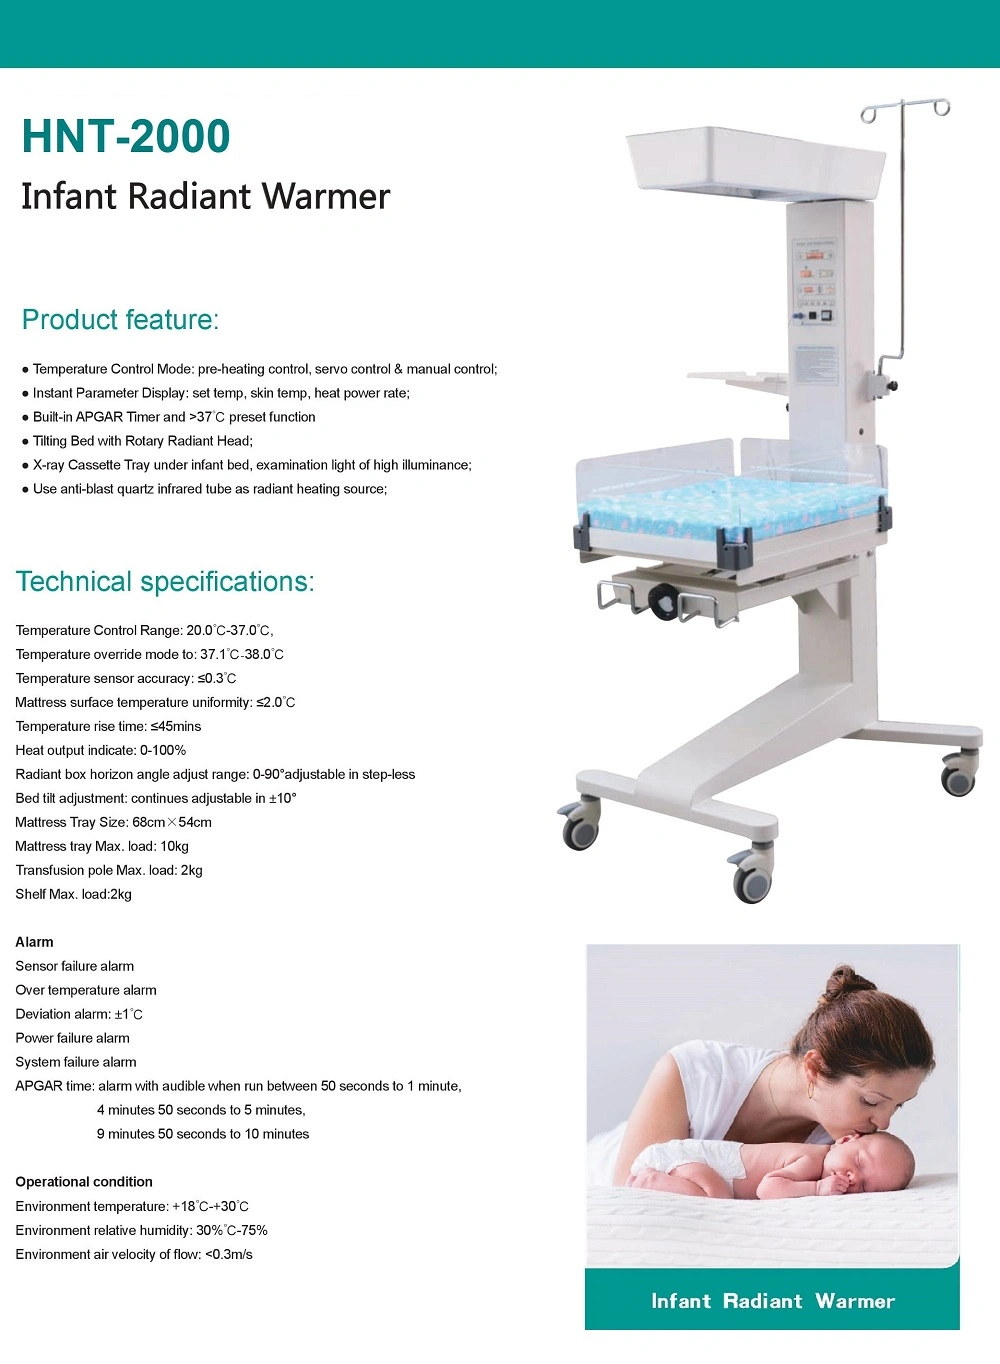 Medical Infant Equipment Medical Infant Radiant Warmer Infant Incubator Radiant Warmer Newborn Baby Infant Radiant Warmer